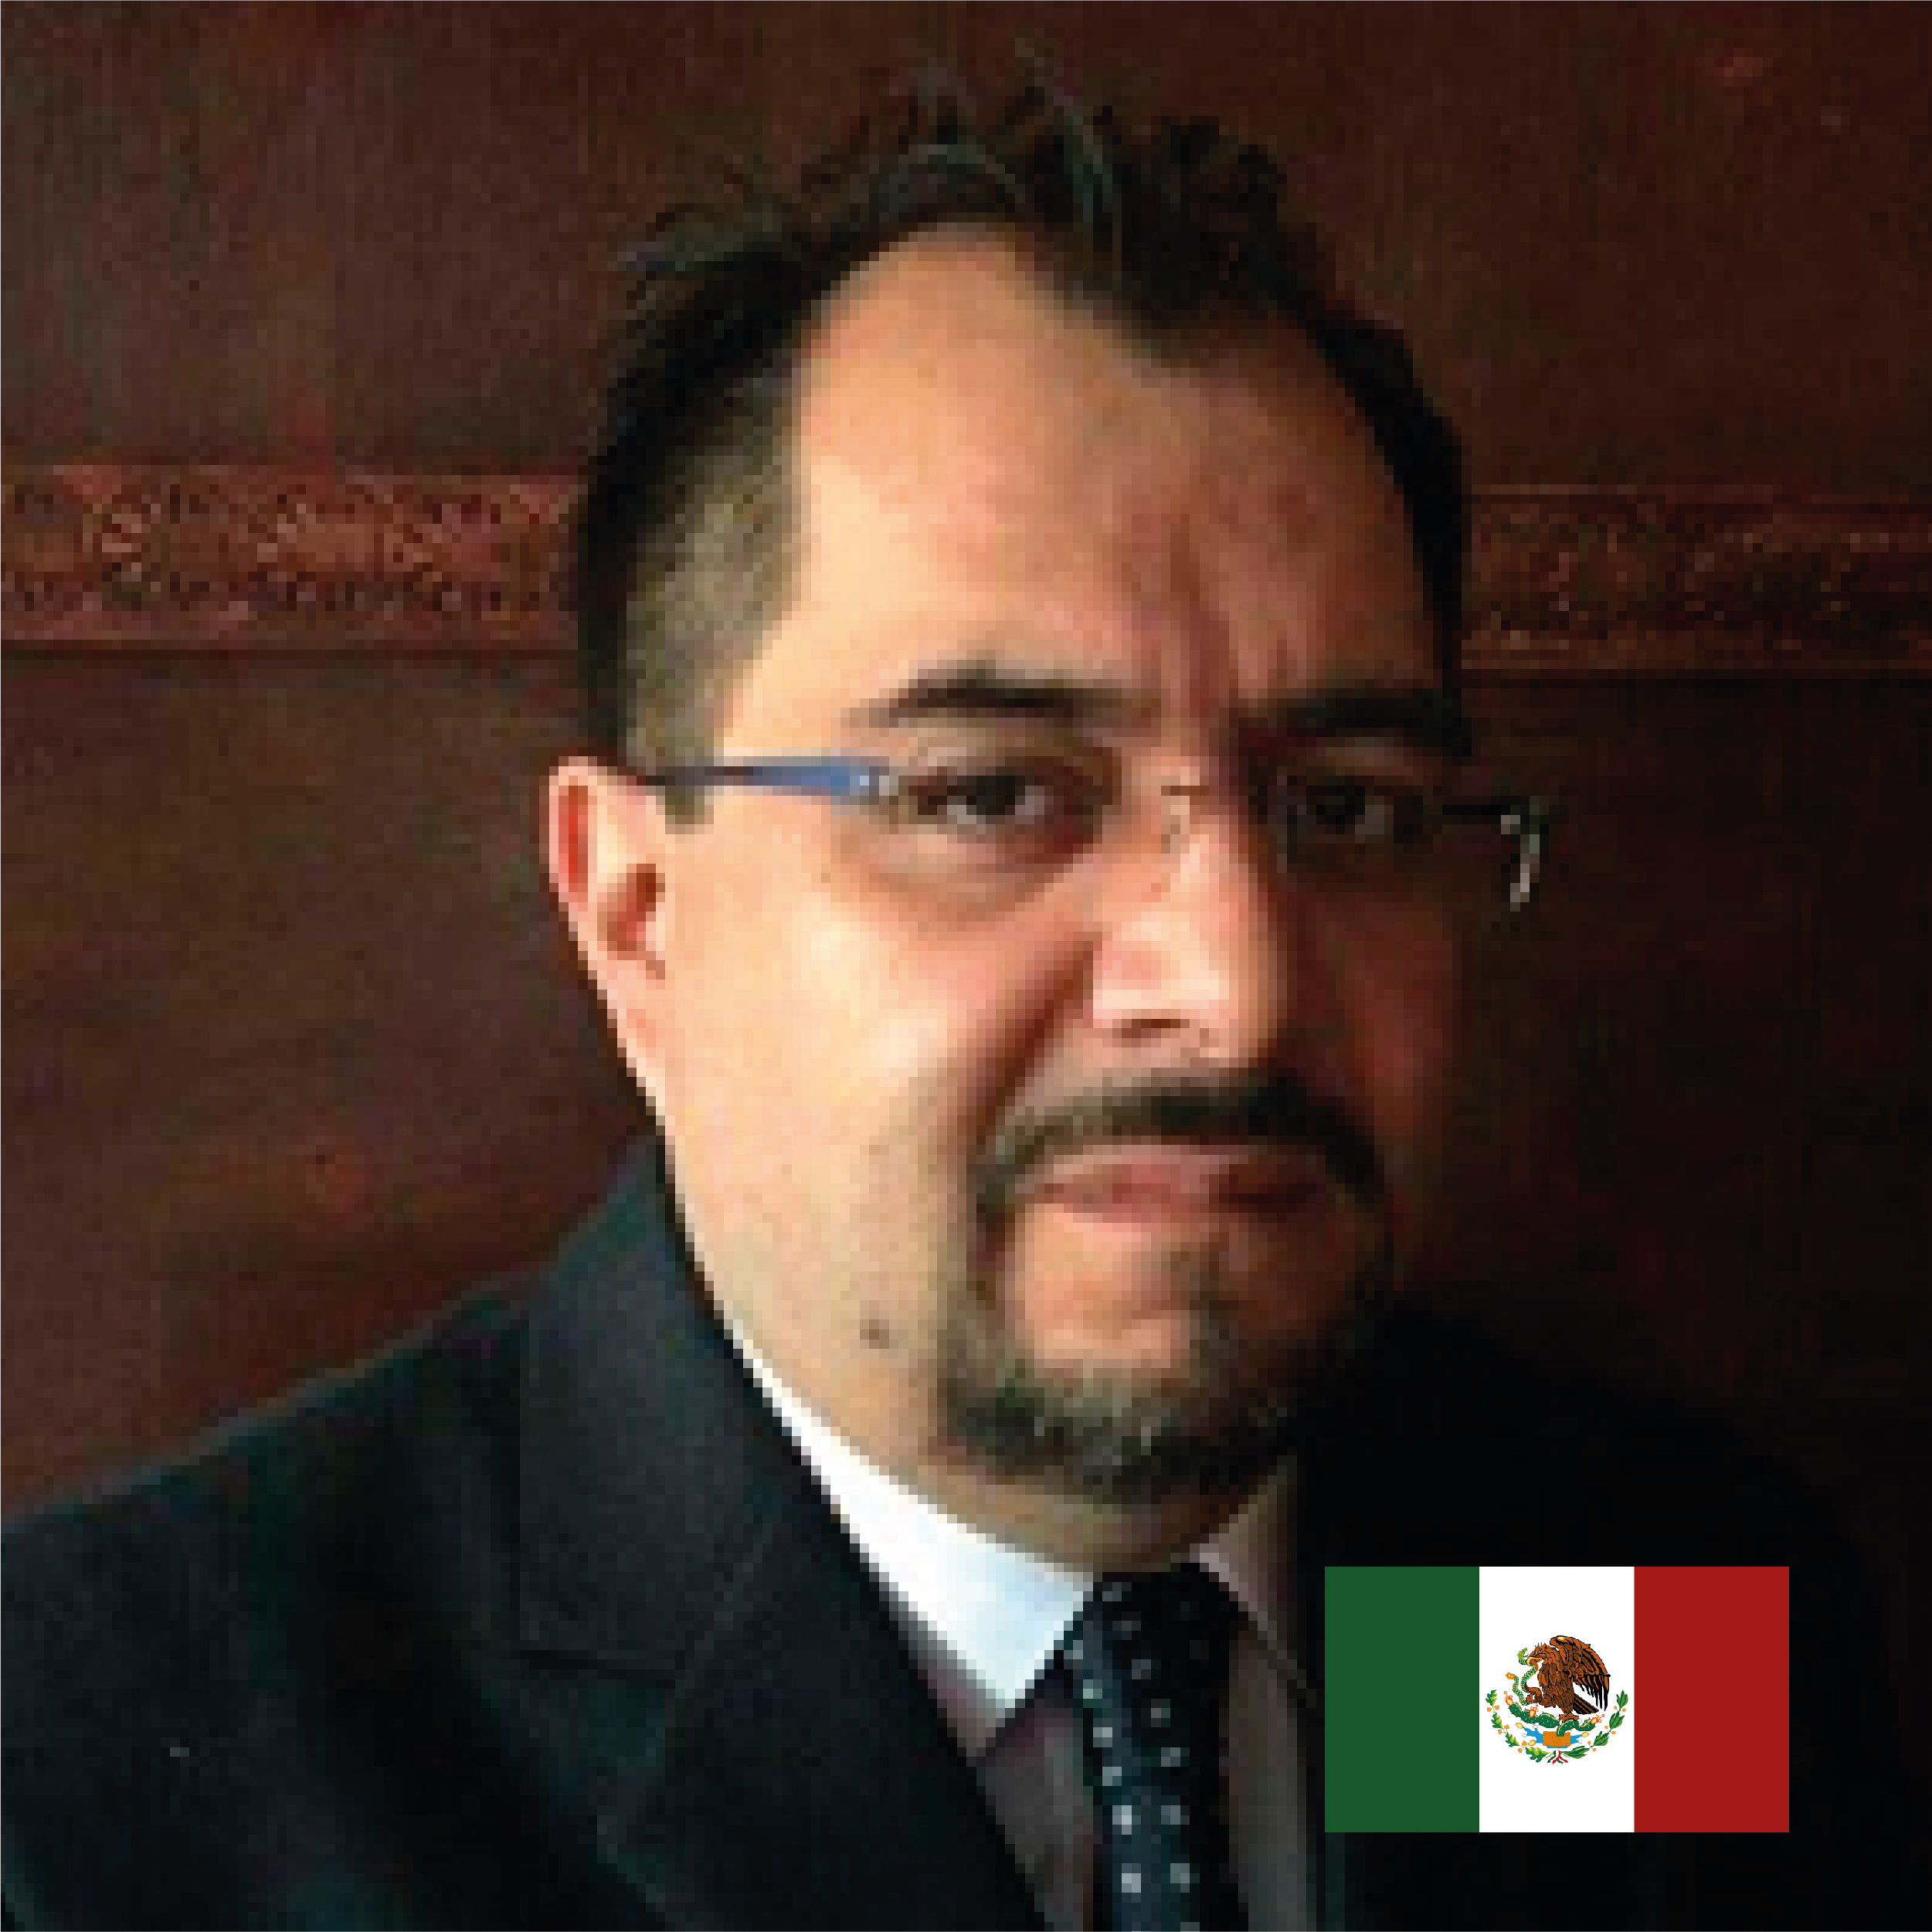 Dr. Hector Campuzano